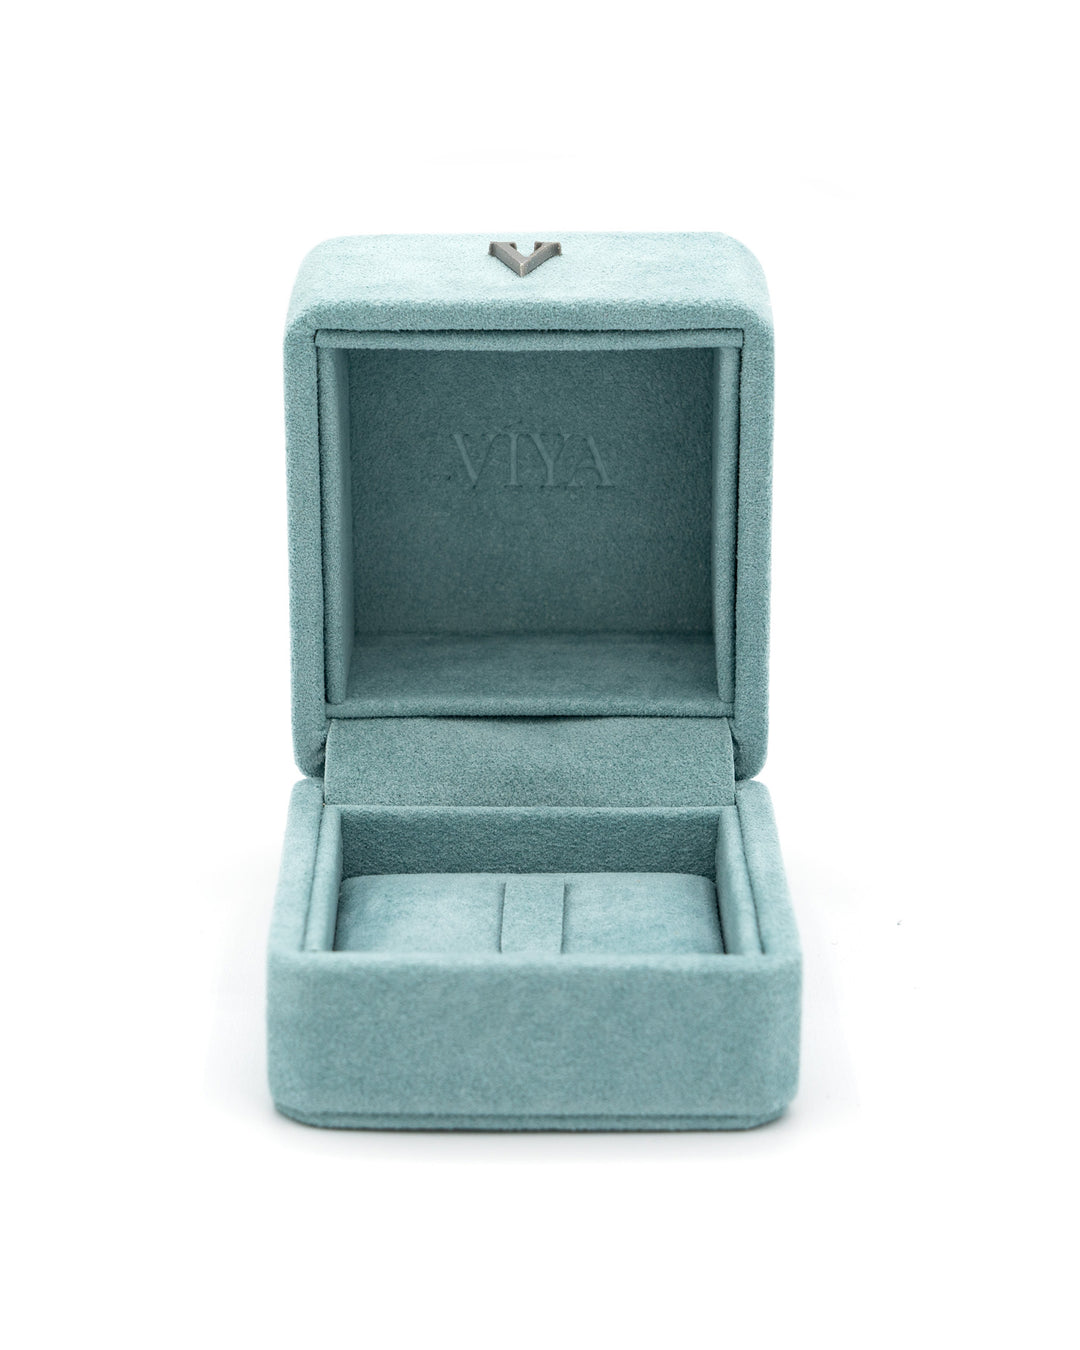 Medium Ring Box